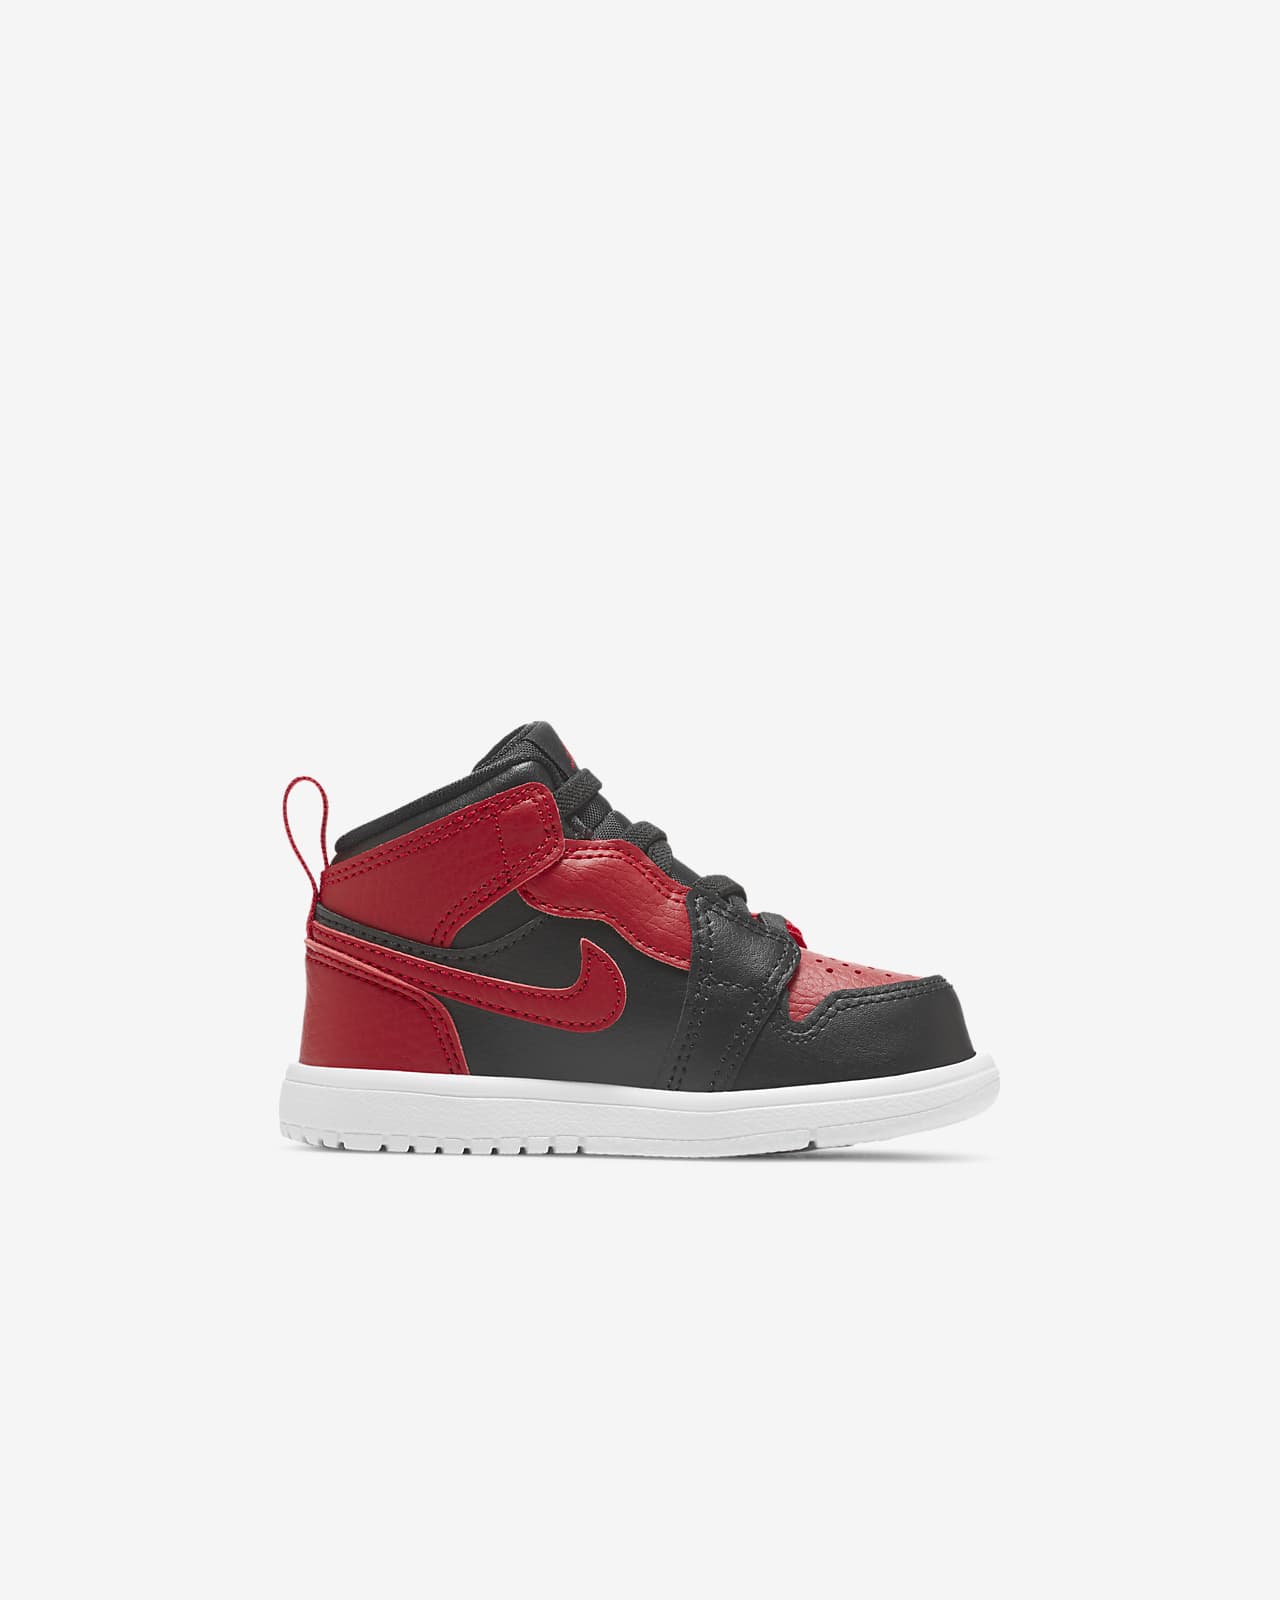 Jordan 1 Mid Baby and Toddler Shoe. Nike NL